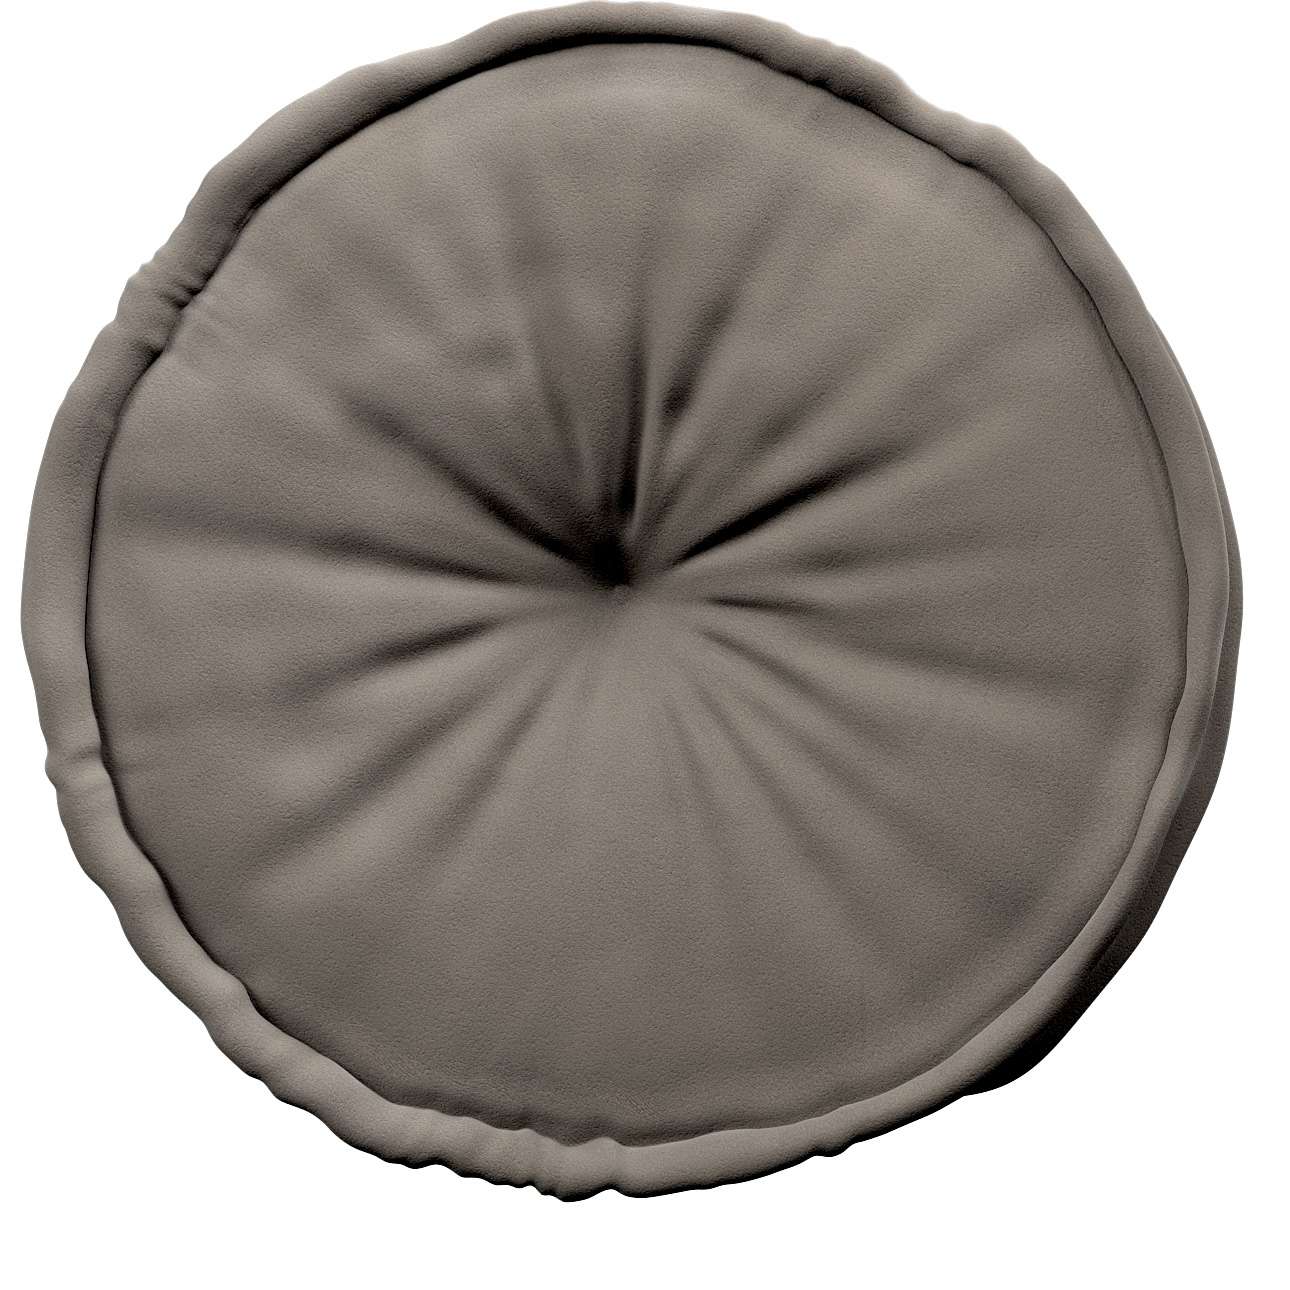 French pouf 50x13cm - Posh Velvet - grey/beige